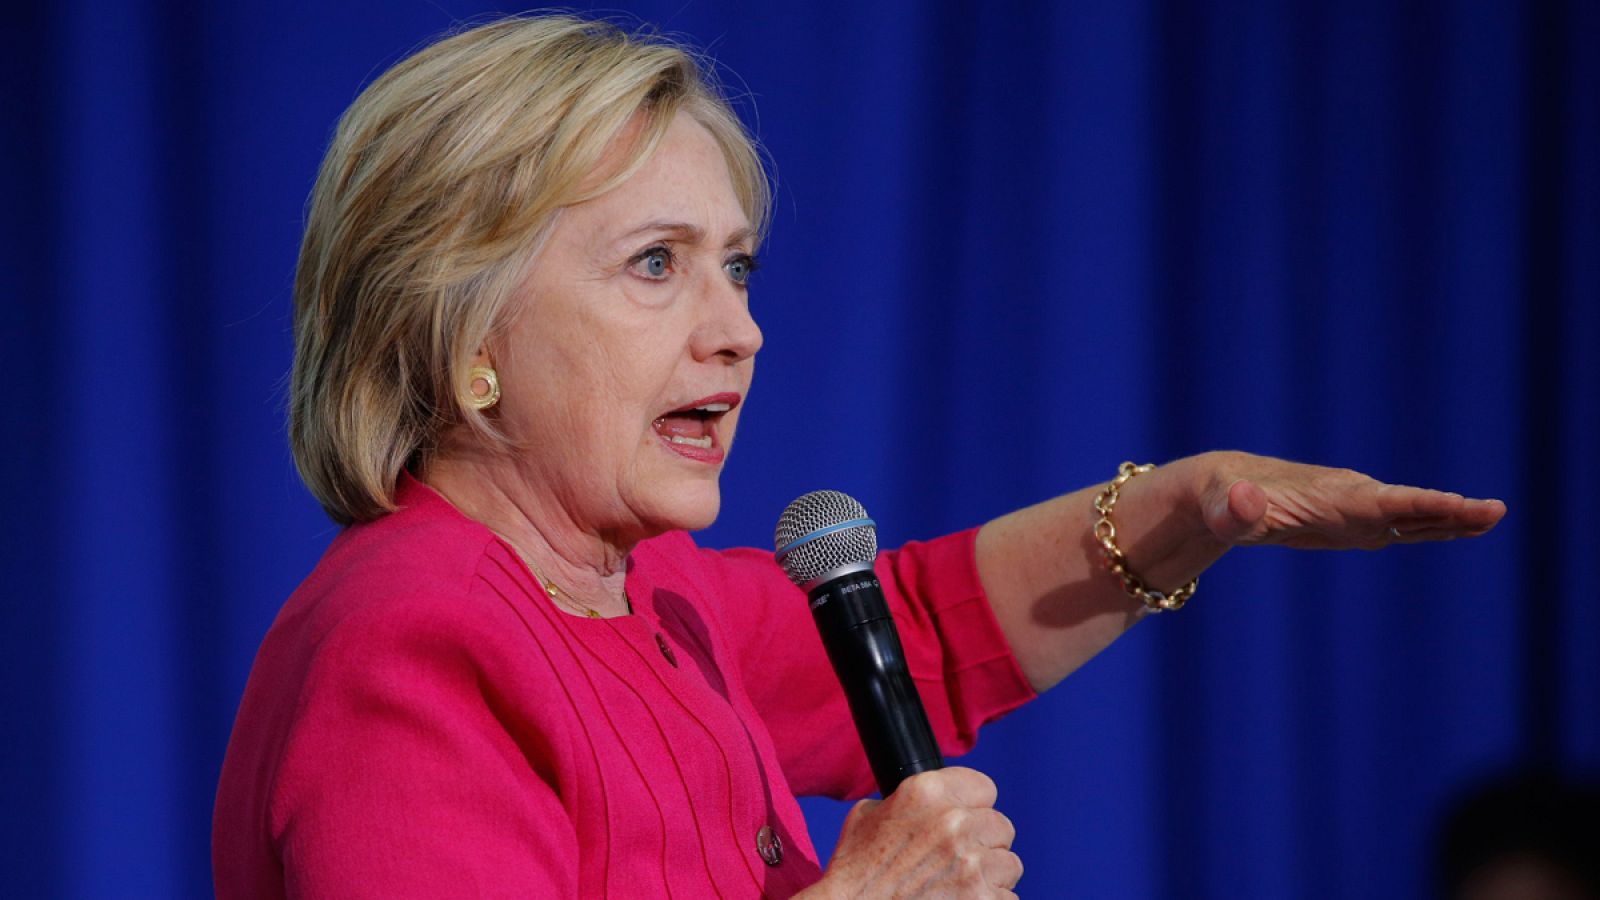 La candidata demócrata, Hillary Clinton, en una imagen del pasado 16 de agosto en un acto de campaña en Philadelphia, Pensilvania.